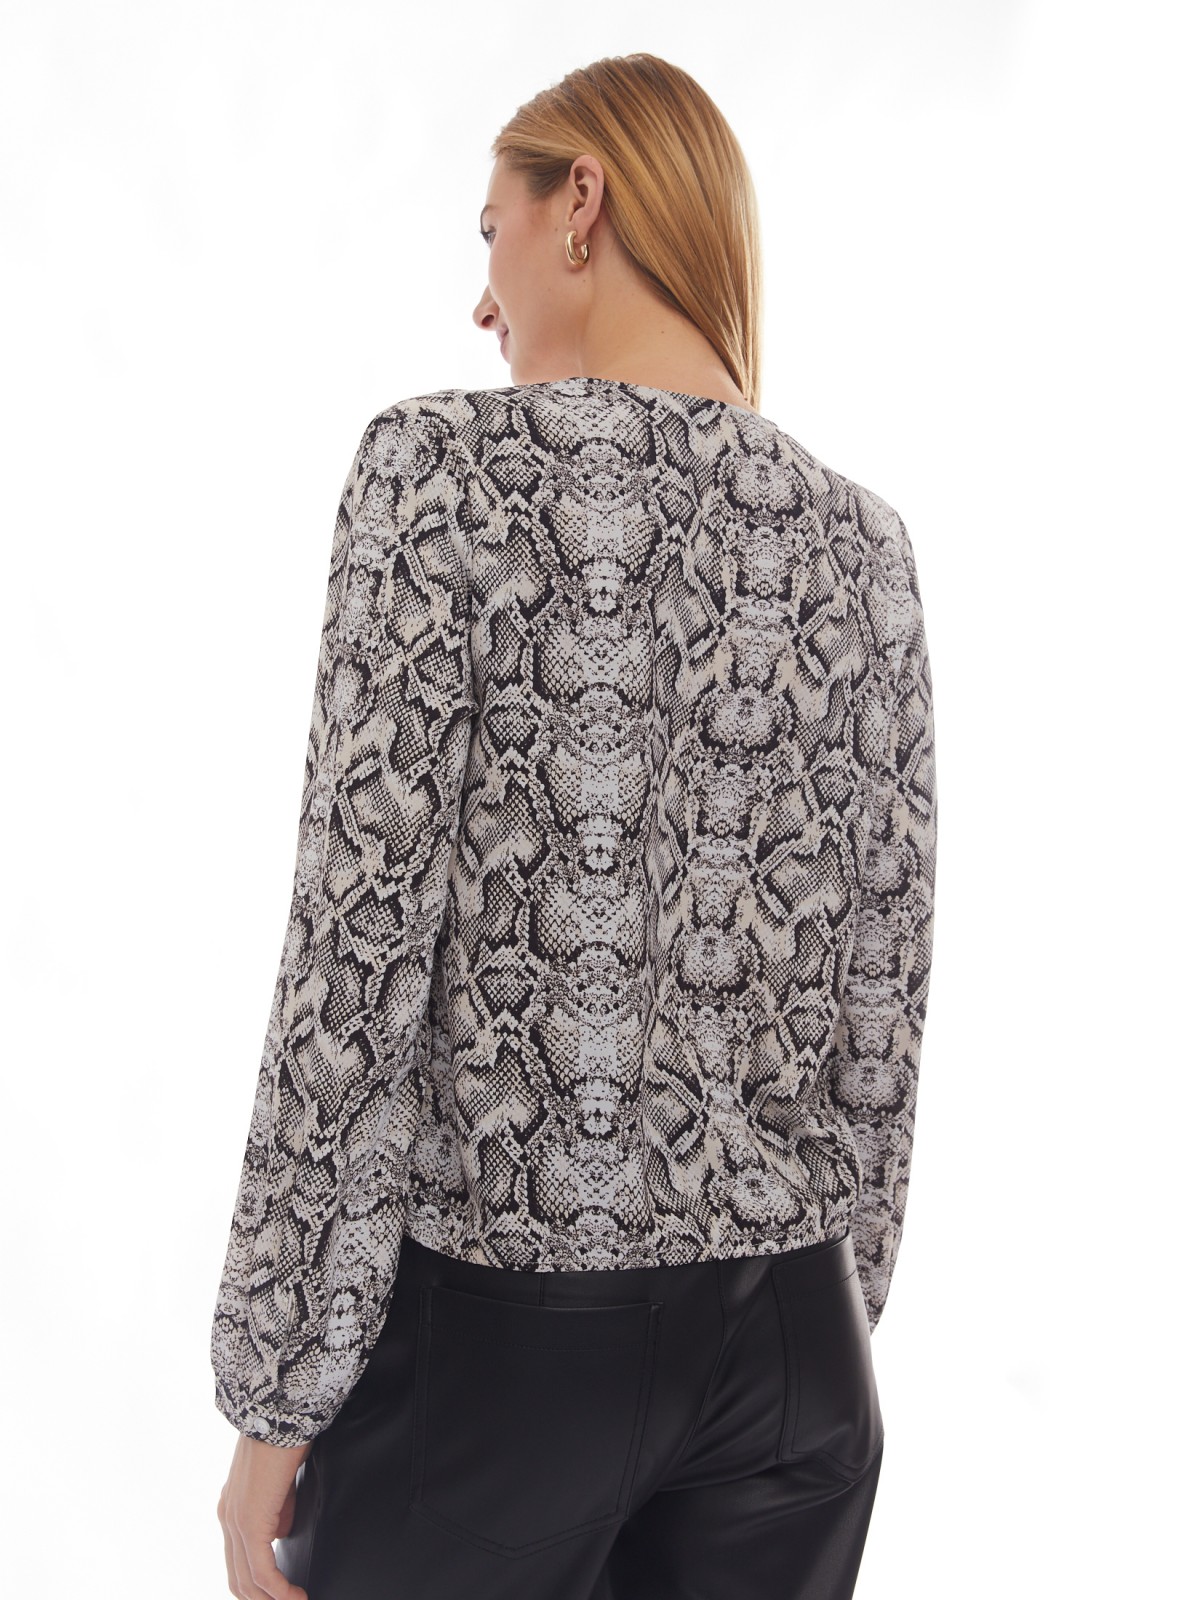 Принтованная блузка на резинке с запахом zolla 024131159571, цвет серый, размер XS - фото 6